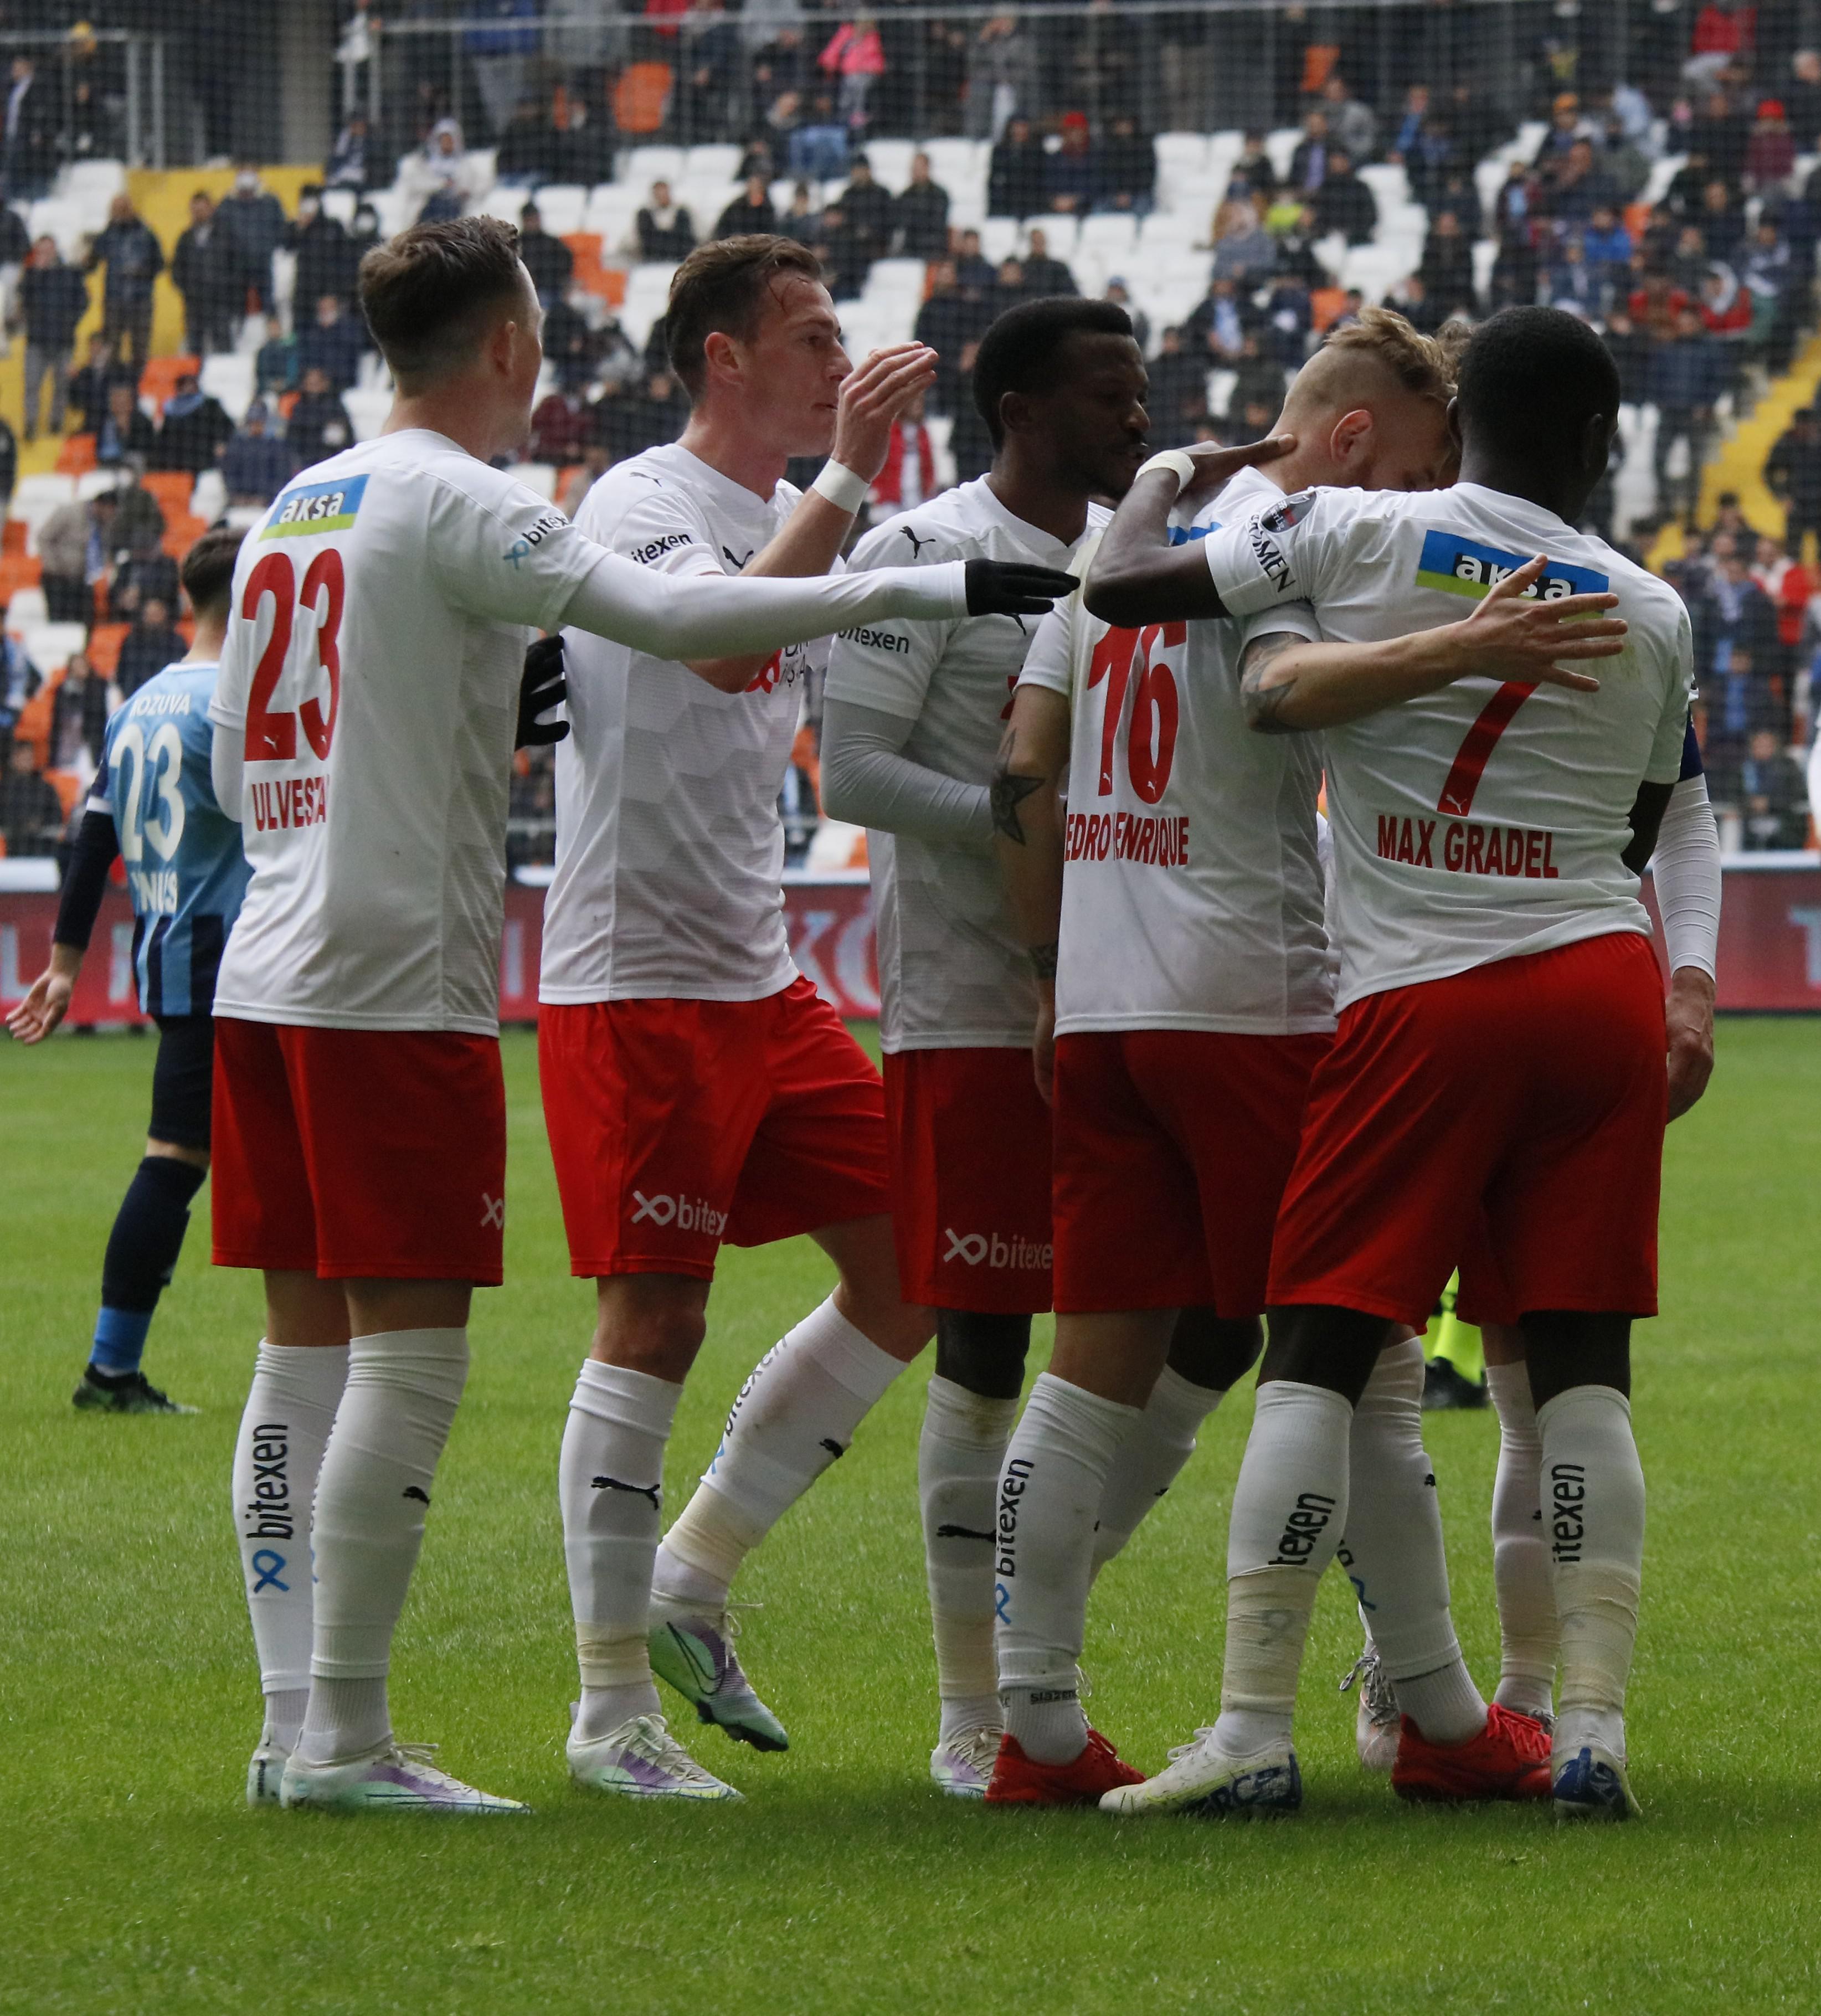 ÖZET | Adana Demirspor - Sivasspor maç sonucu: 2-3